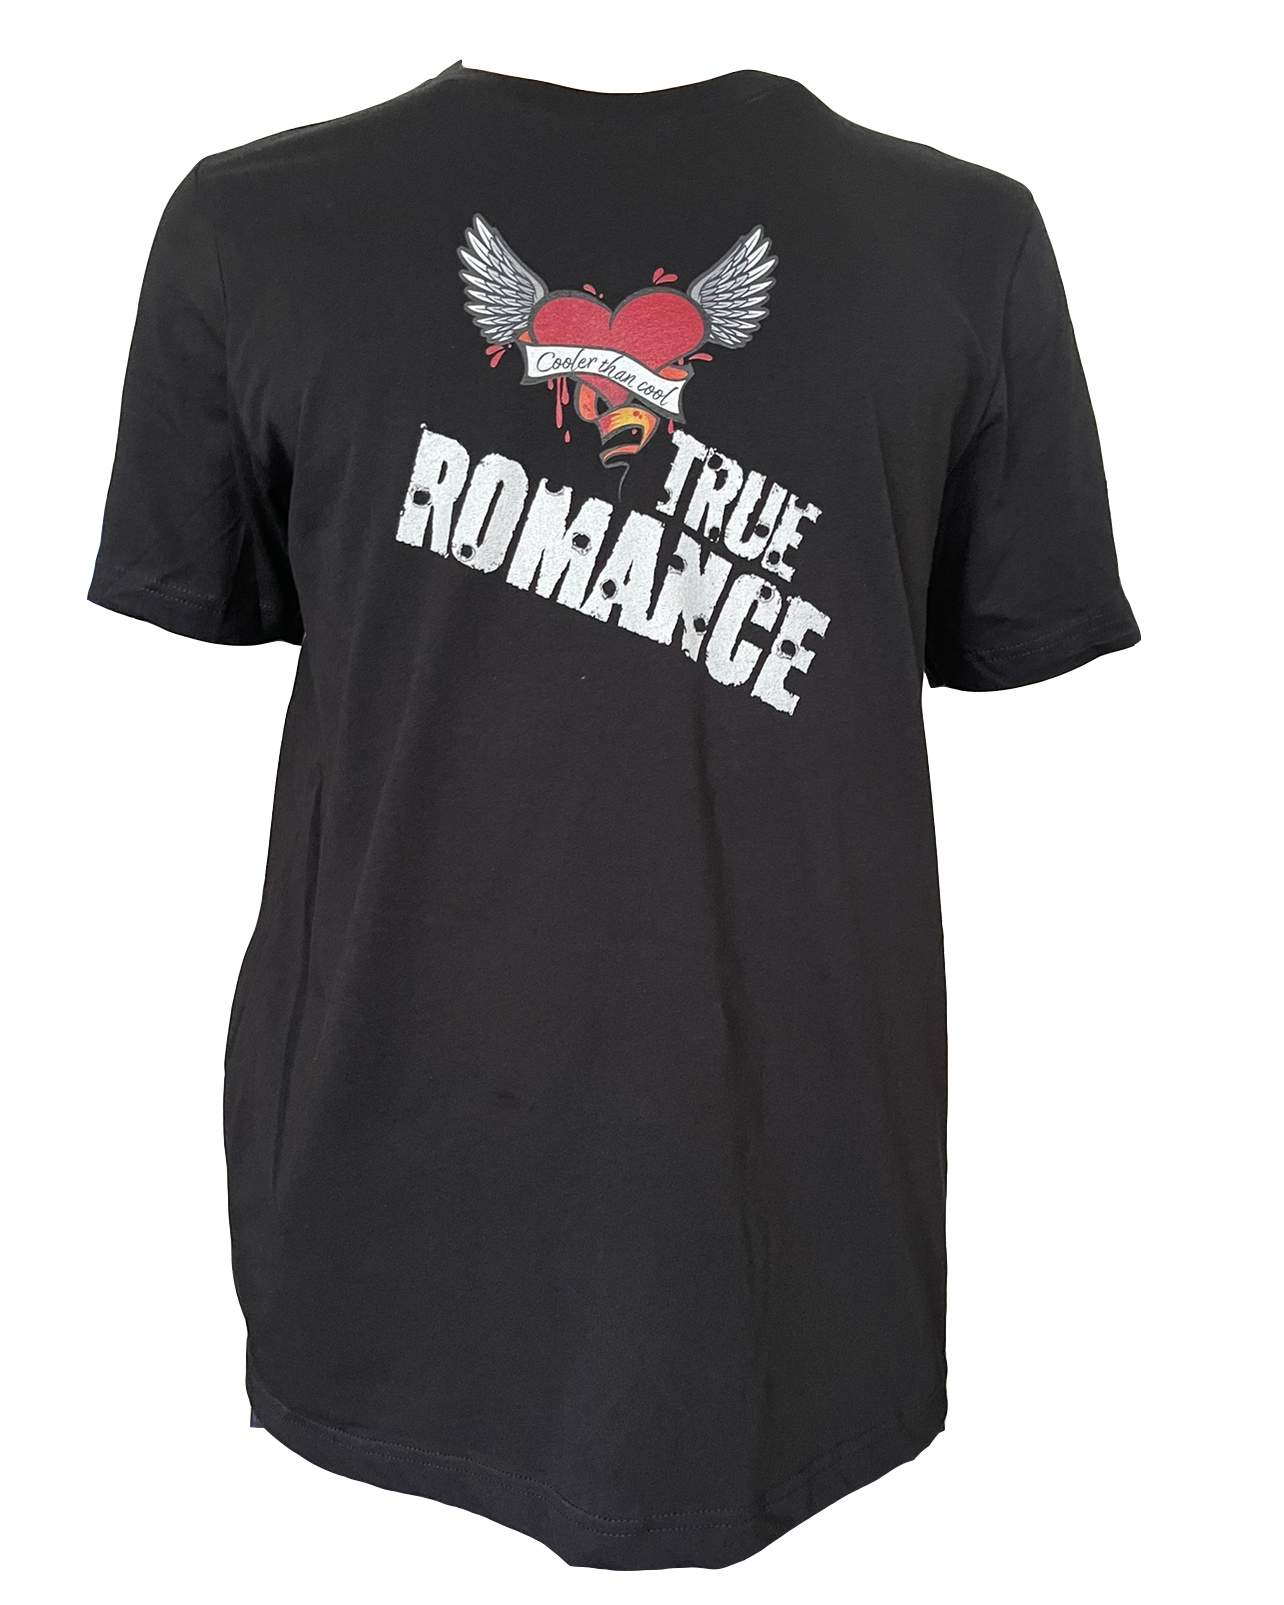 True Romance Cooler than cool T-Shirt